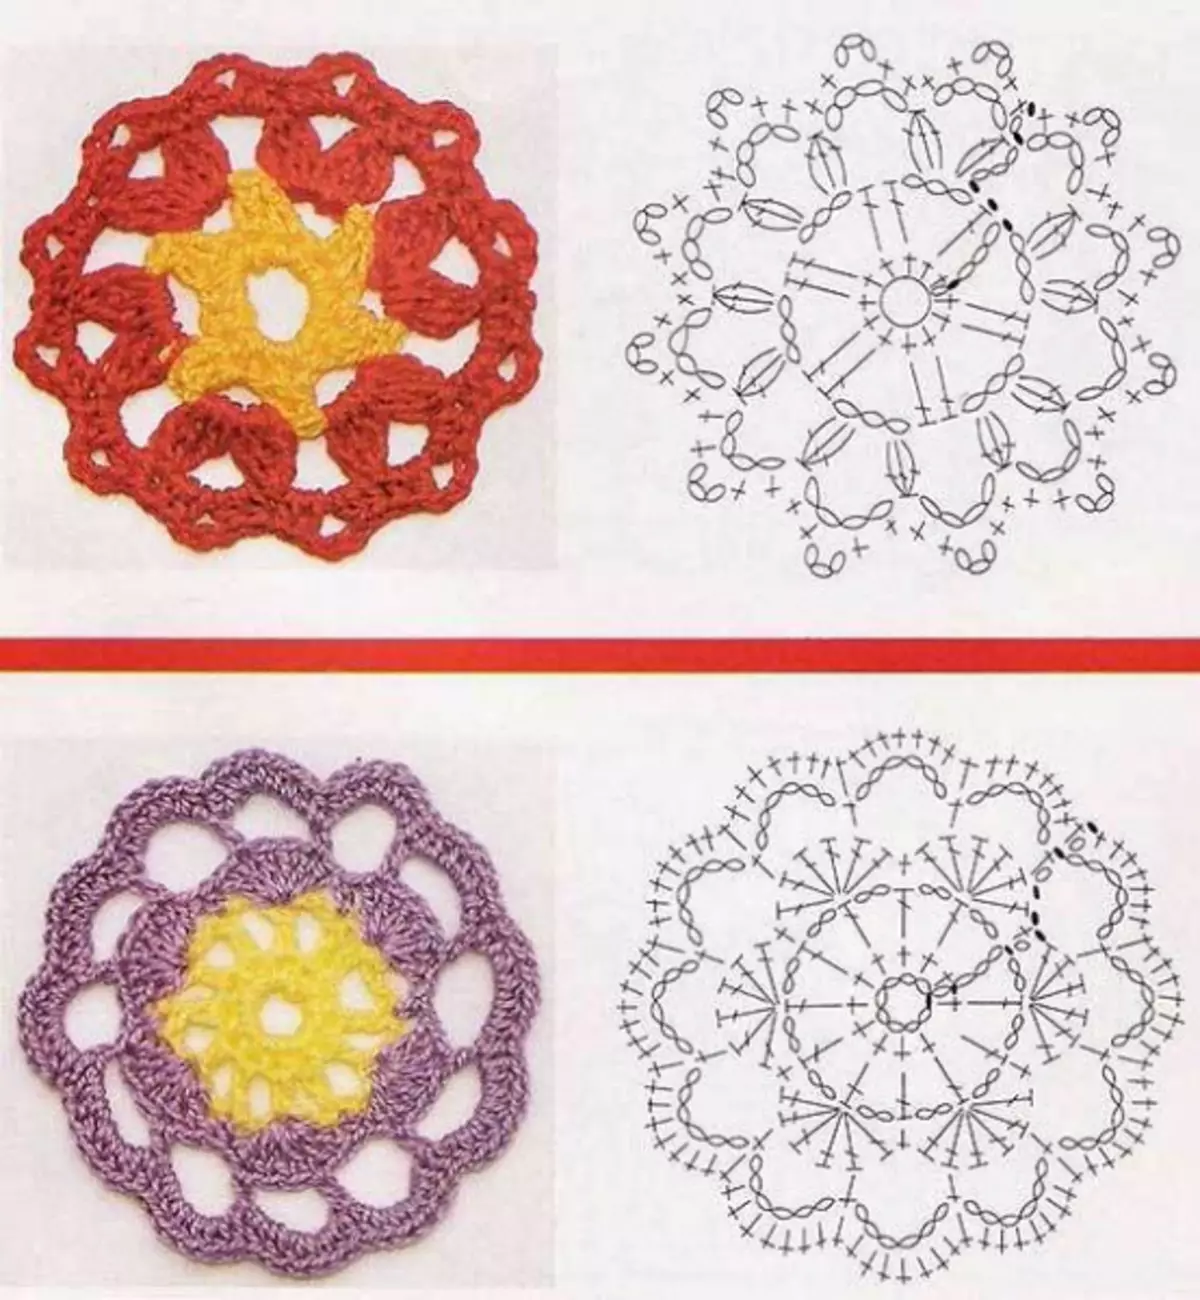 Motivos de ganchillo redondos y cuadrados con esquemas.